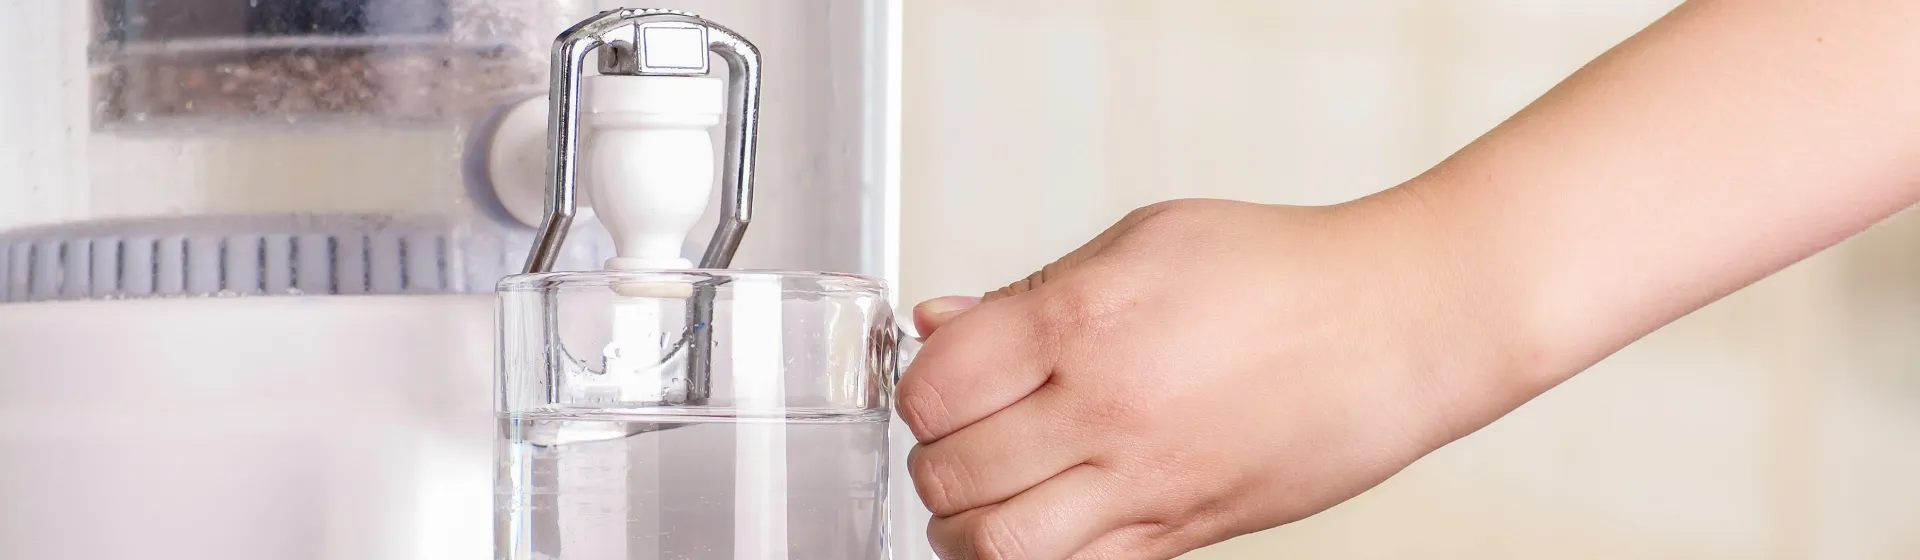 Mão branca segurando um copo de água cheio no filtro de água